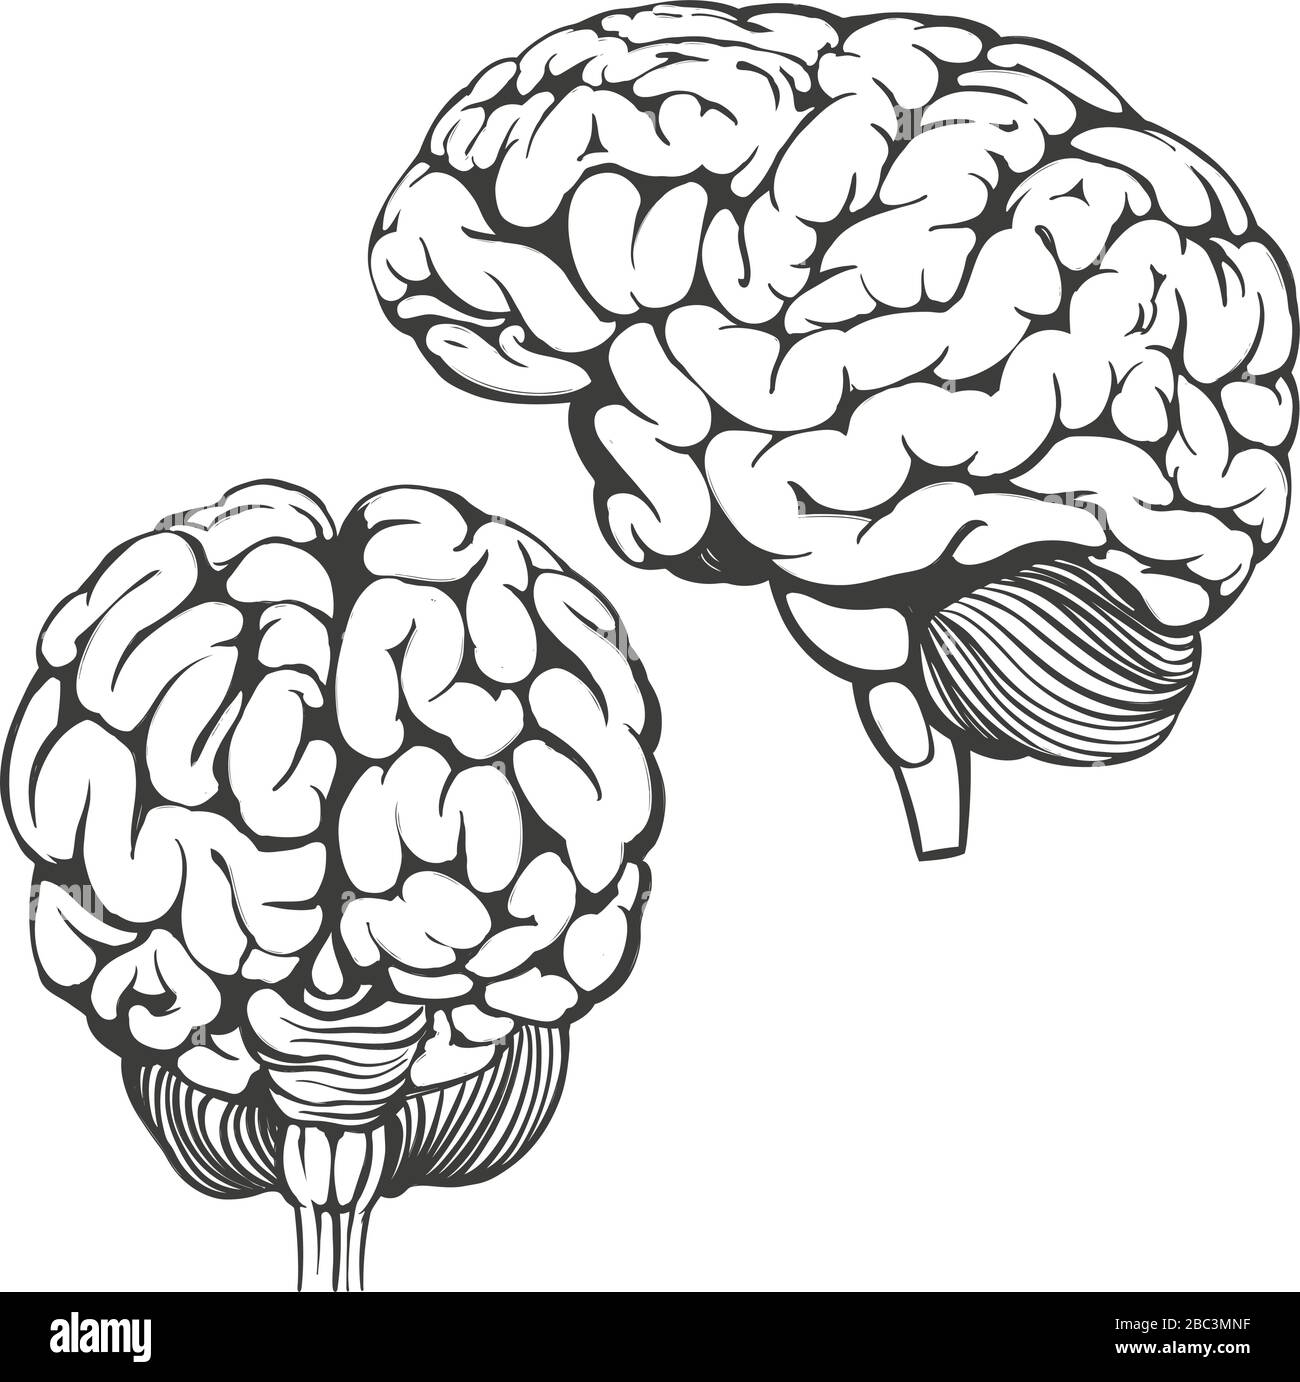 collection cerveaux, anatomie humaine, dessin d'illustration vectorielle dessinée à la main Illustration de Vecteur